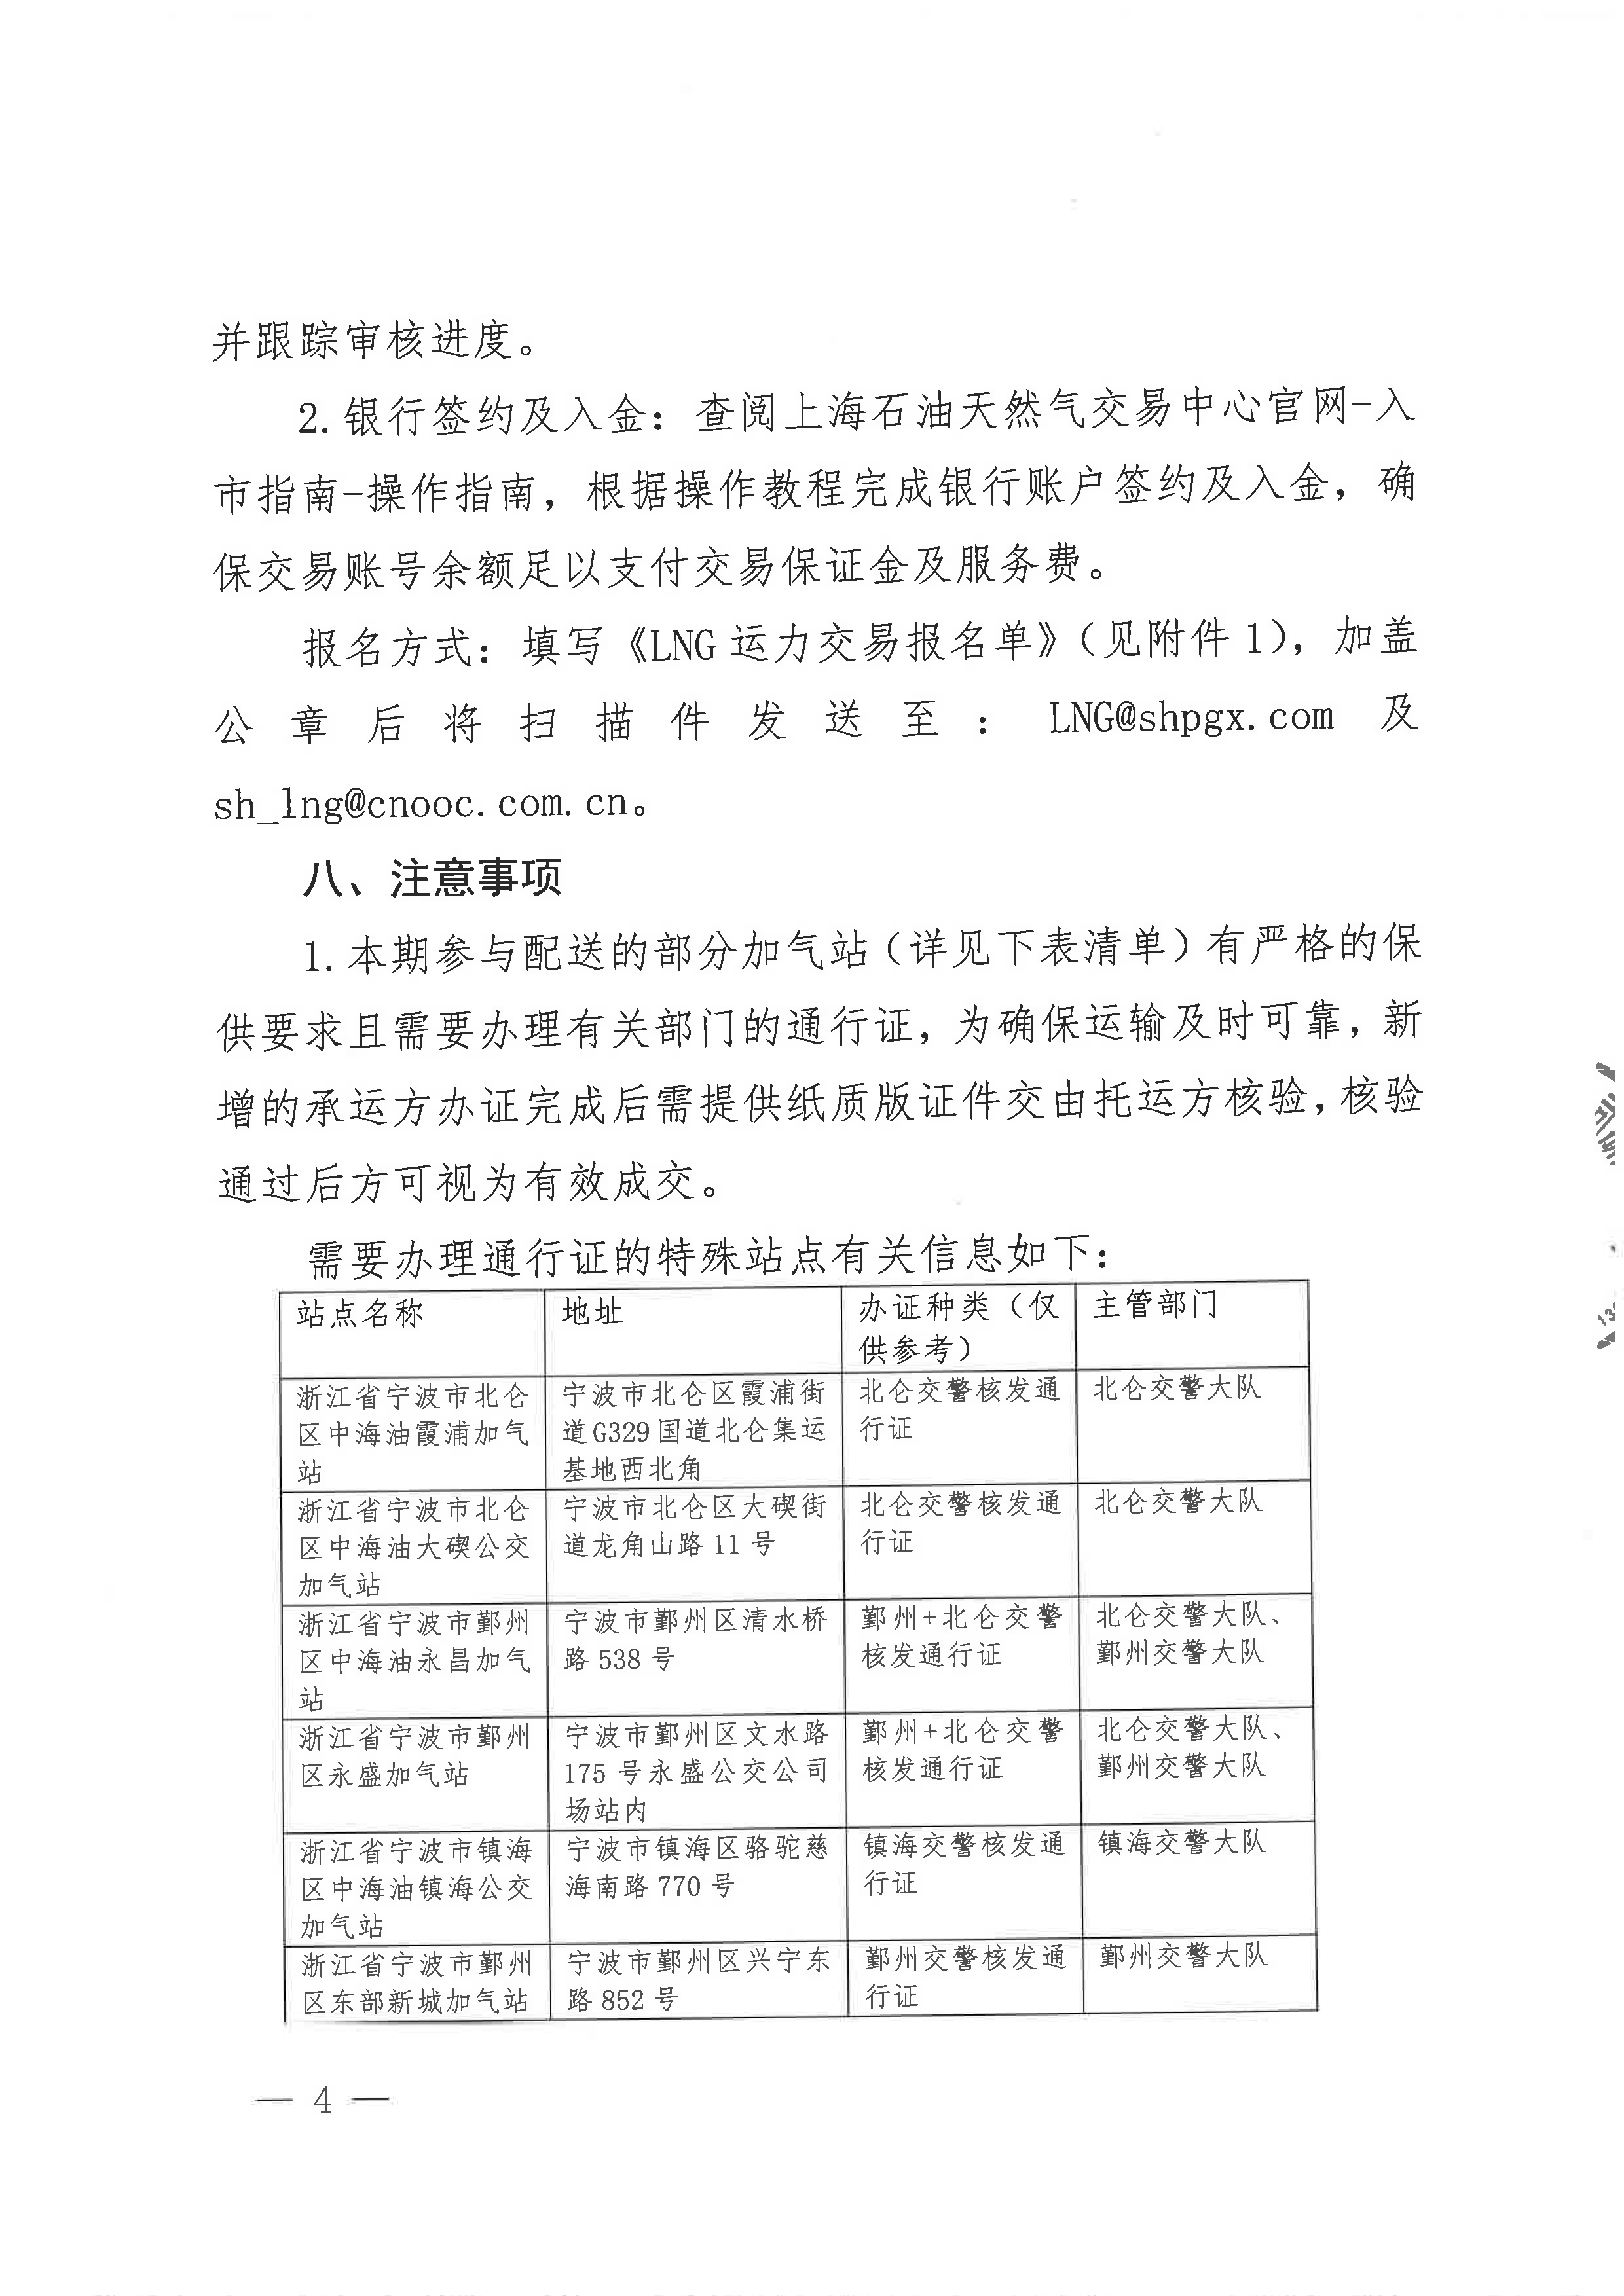 中海石油气电集团浙江分公司关于开展运力竞价交易的公告_页面_4.png